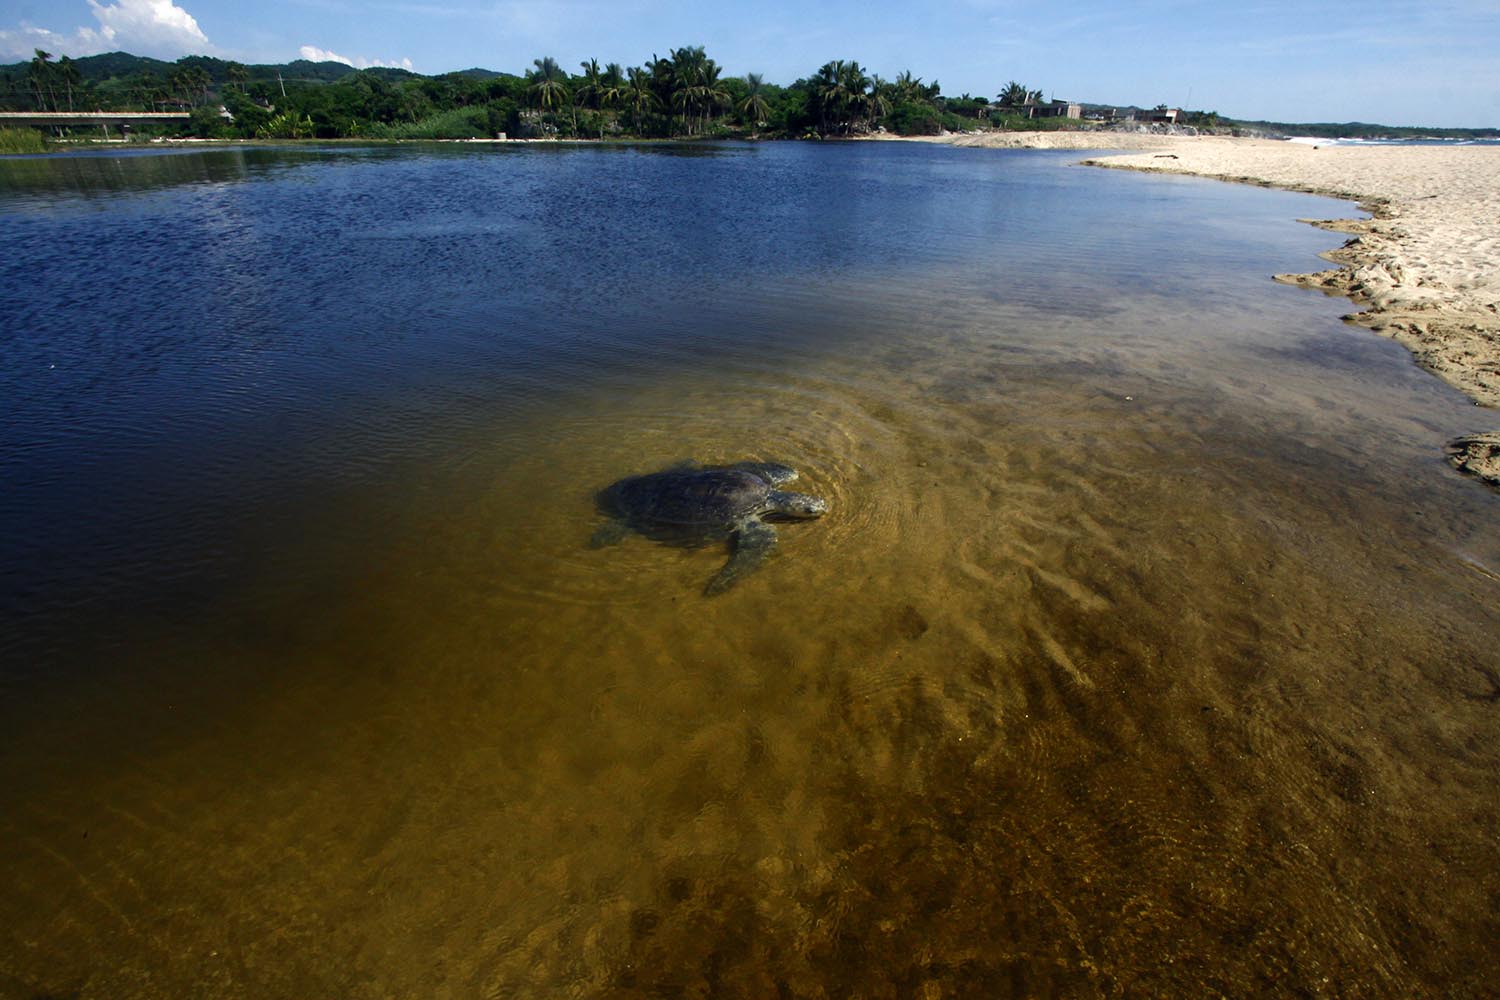 Comienza la llegada diaria de unas 1.000 tortugas golfinas a las playas de Ixtapilla, en Michoacán